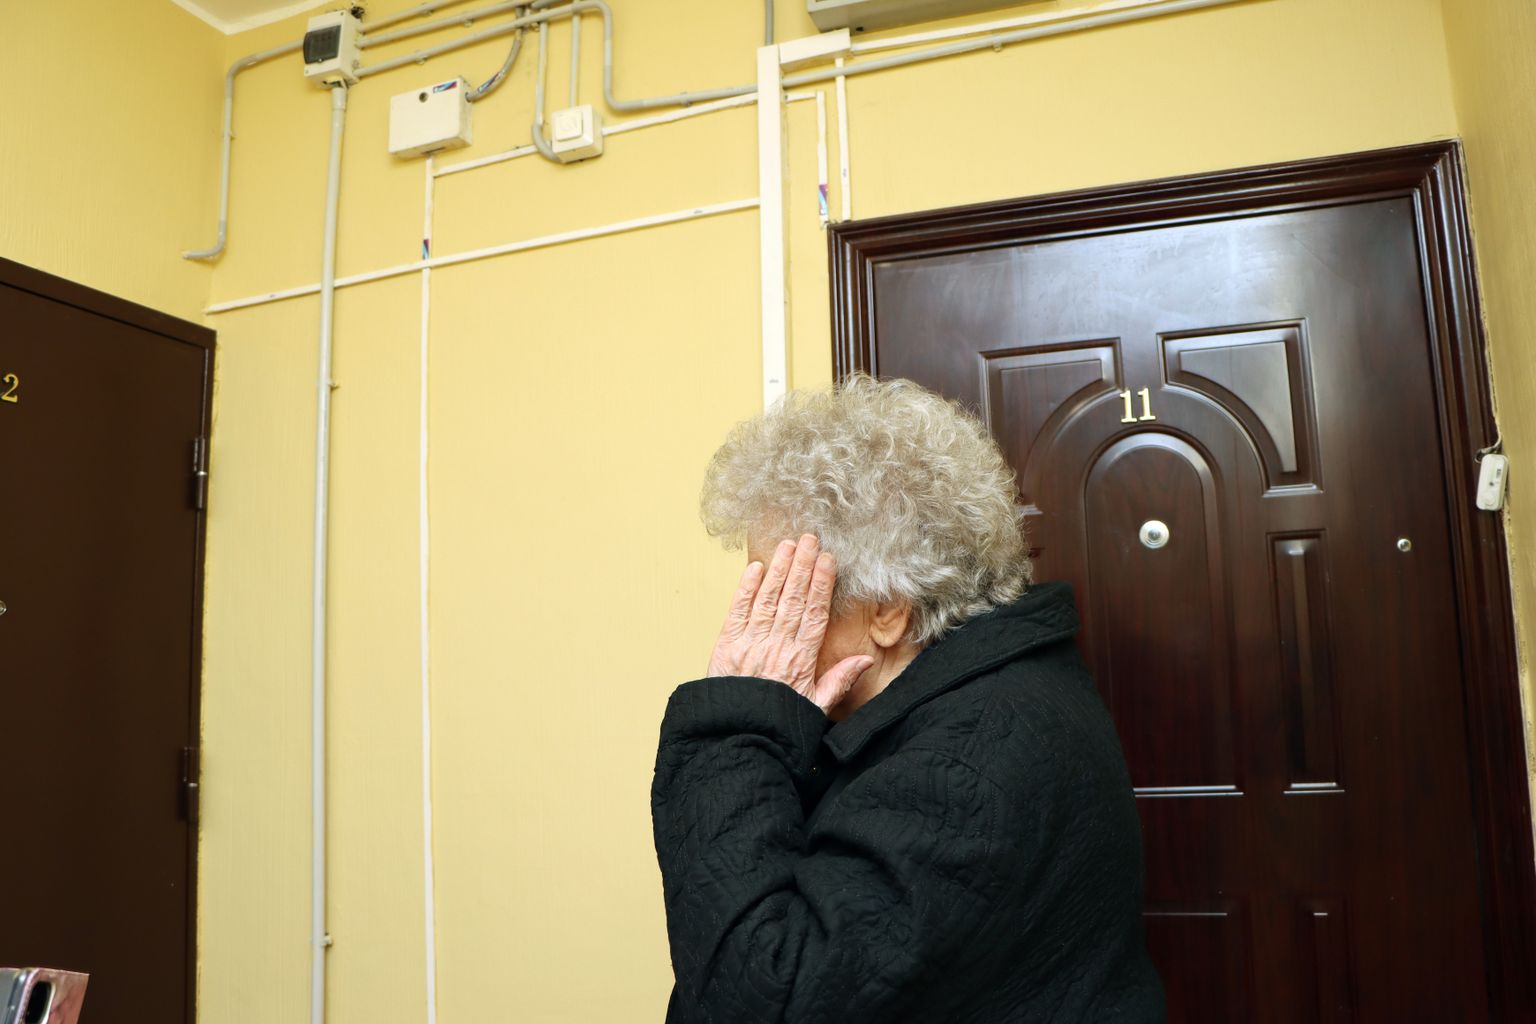 "Olen naabrimemme pärast mures, kuid minagi tahan rahu," ütleb eaka naisterahva kõrvalkorteris elav naine.